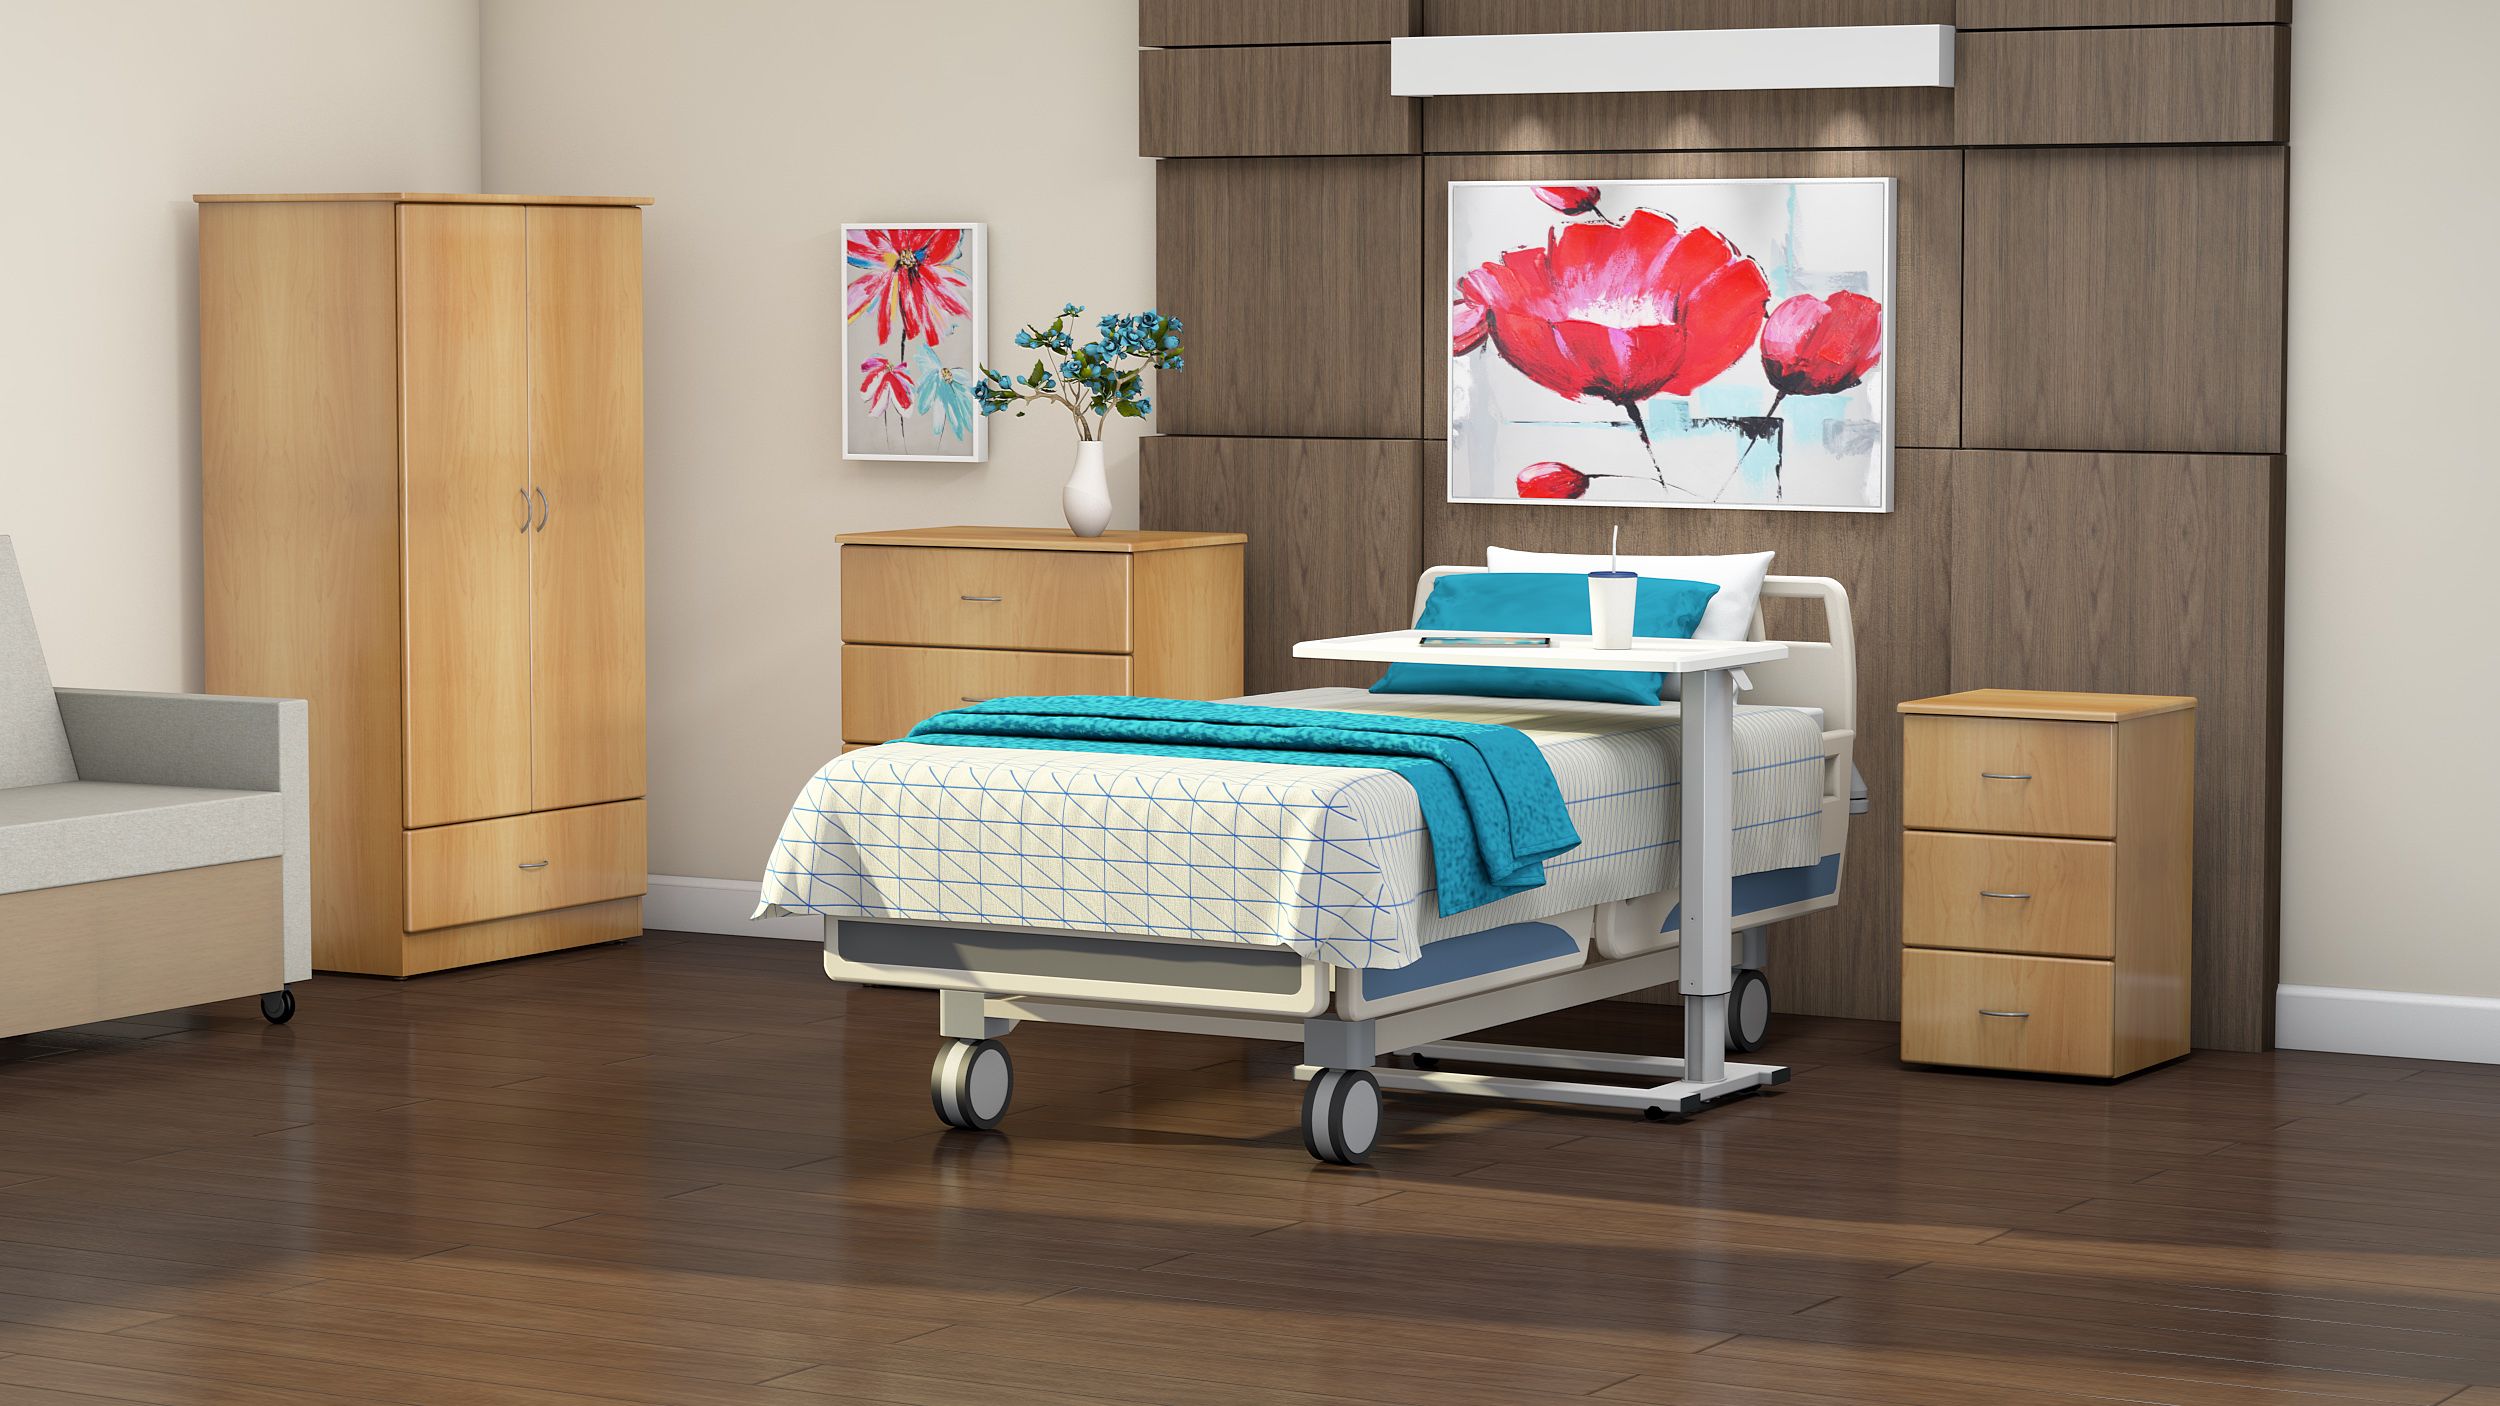 hospital room furnished